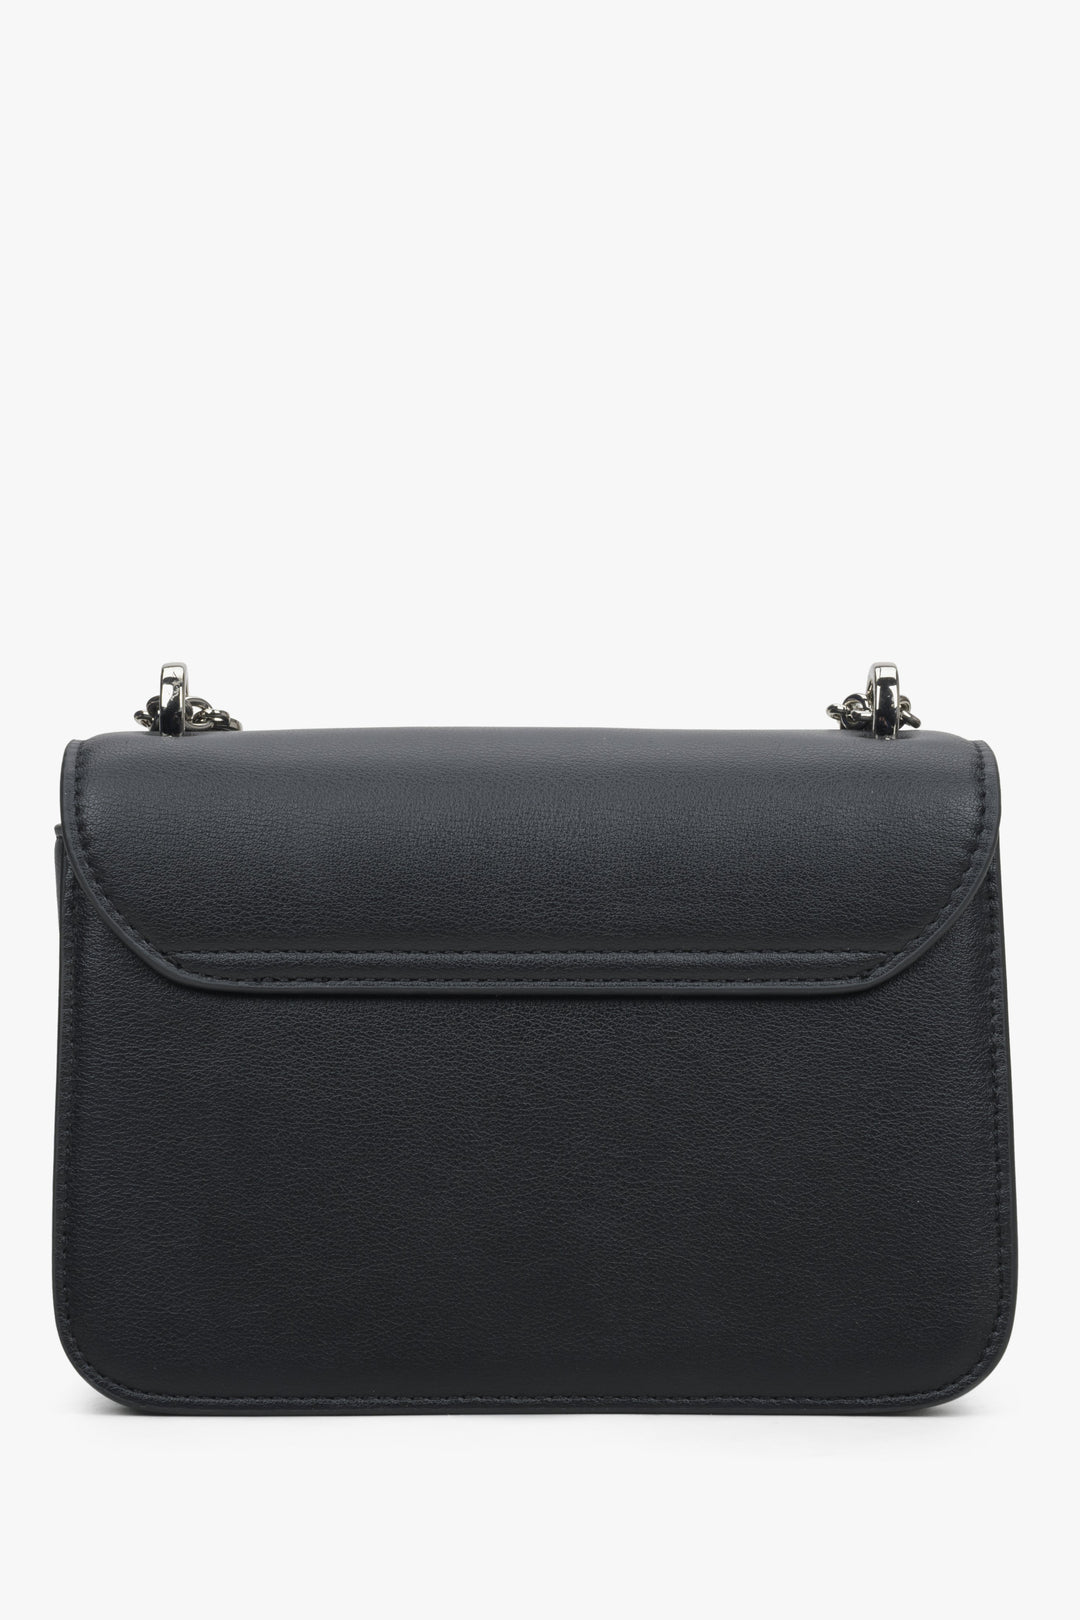 Estro black leather shoulder bag - back view of the model.